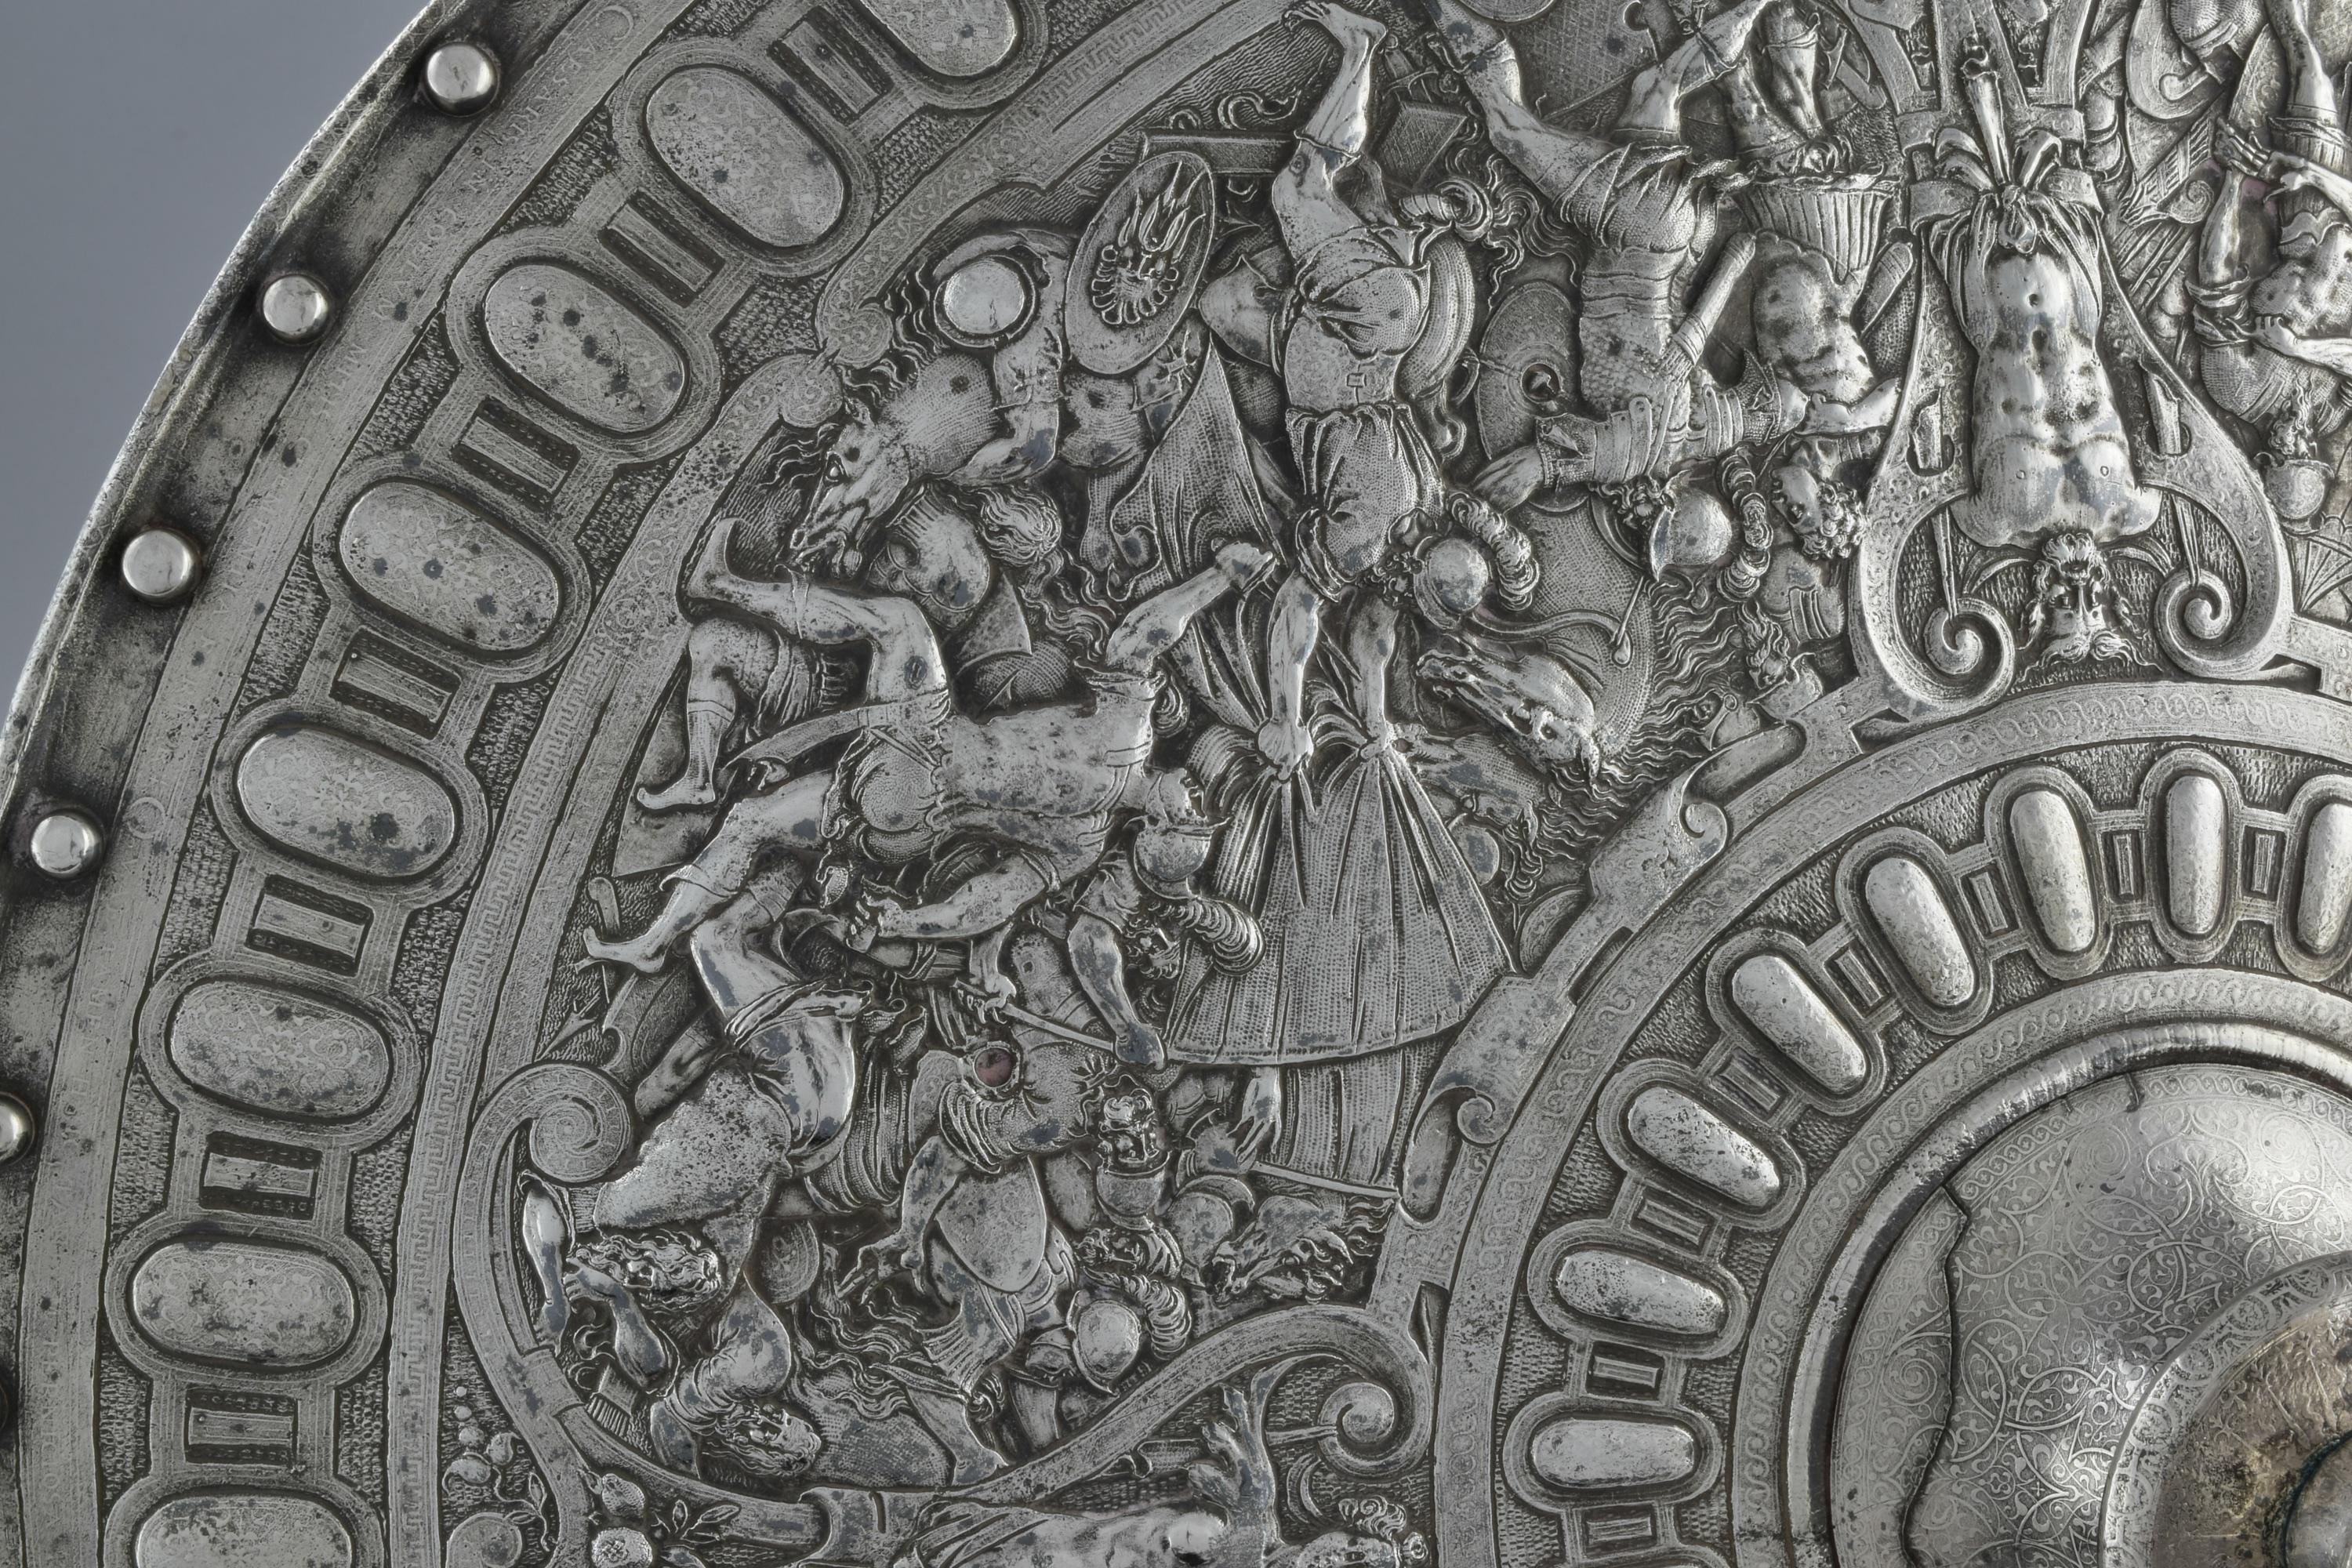 Ein runder Schild, auf dem klassische Schlachtszenen dargestellt sind. Ein weiteres ähnliches Exemplar befindet sich im Metropolitan Museum of Art, Zugangsnummer: 07.102.7.

Biographie:

Elkington & Co, gegründet 1815, ist der Pionier und Erfinder